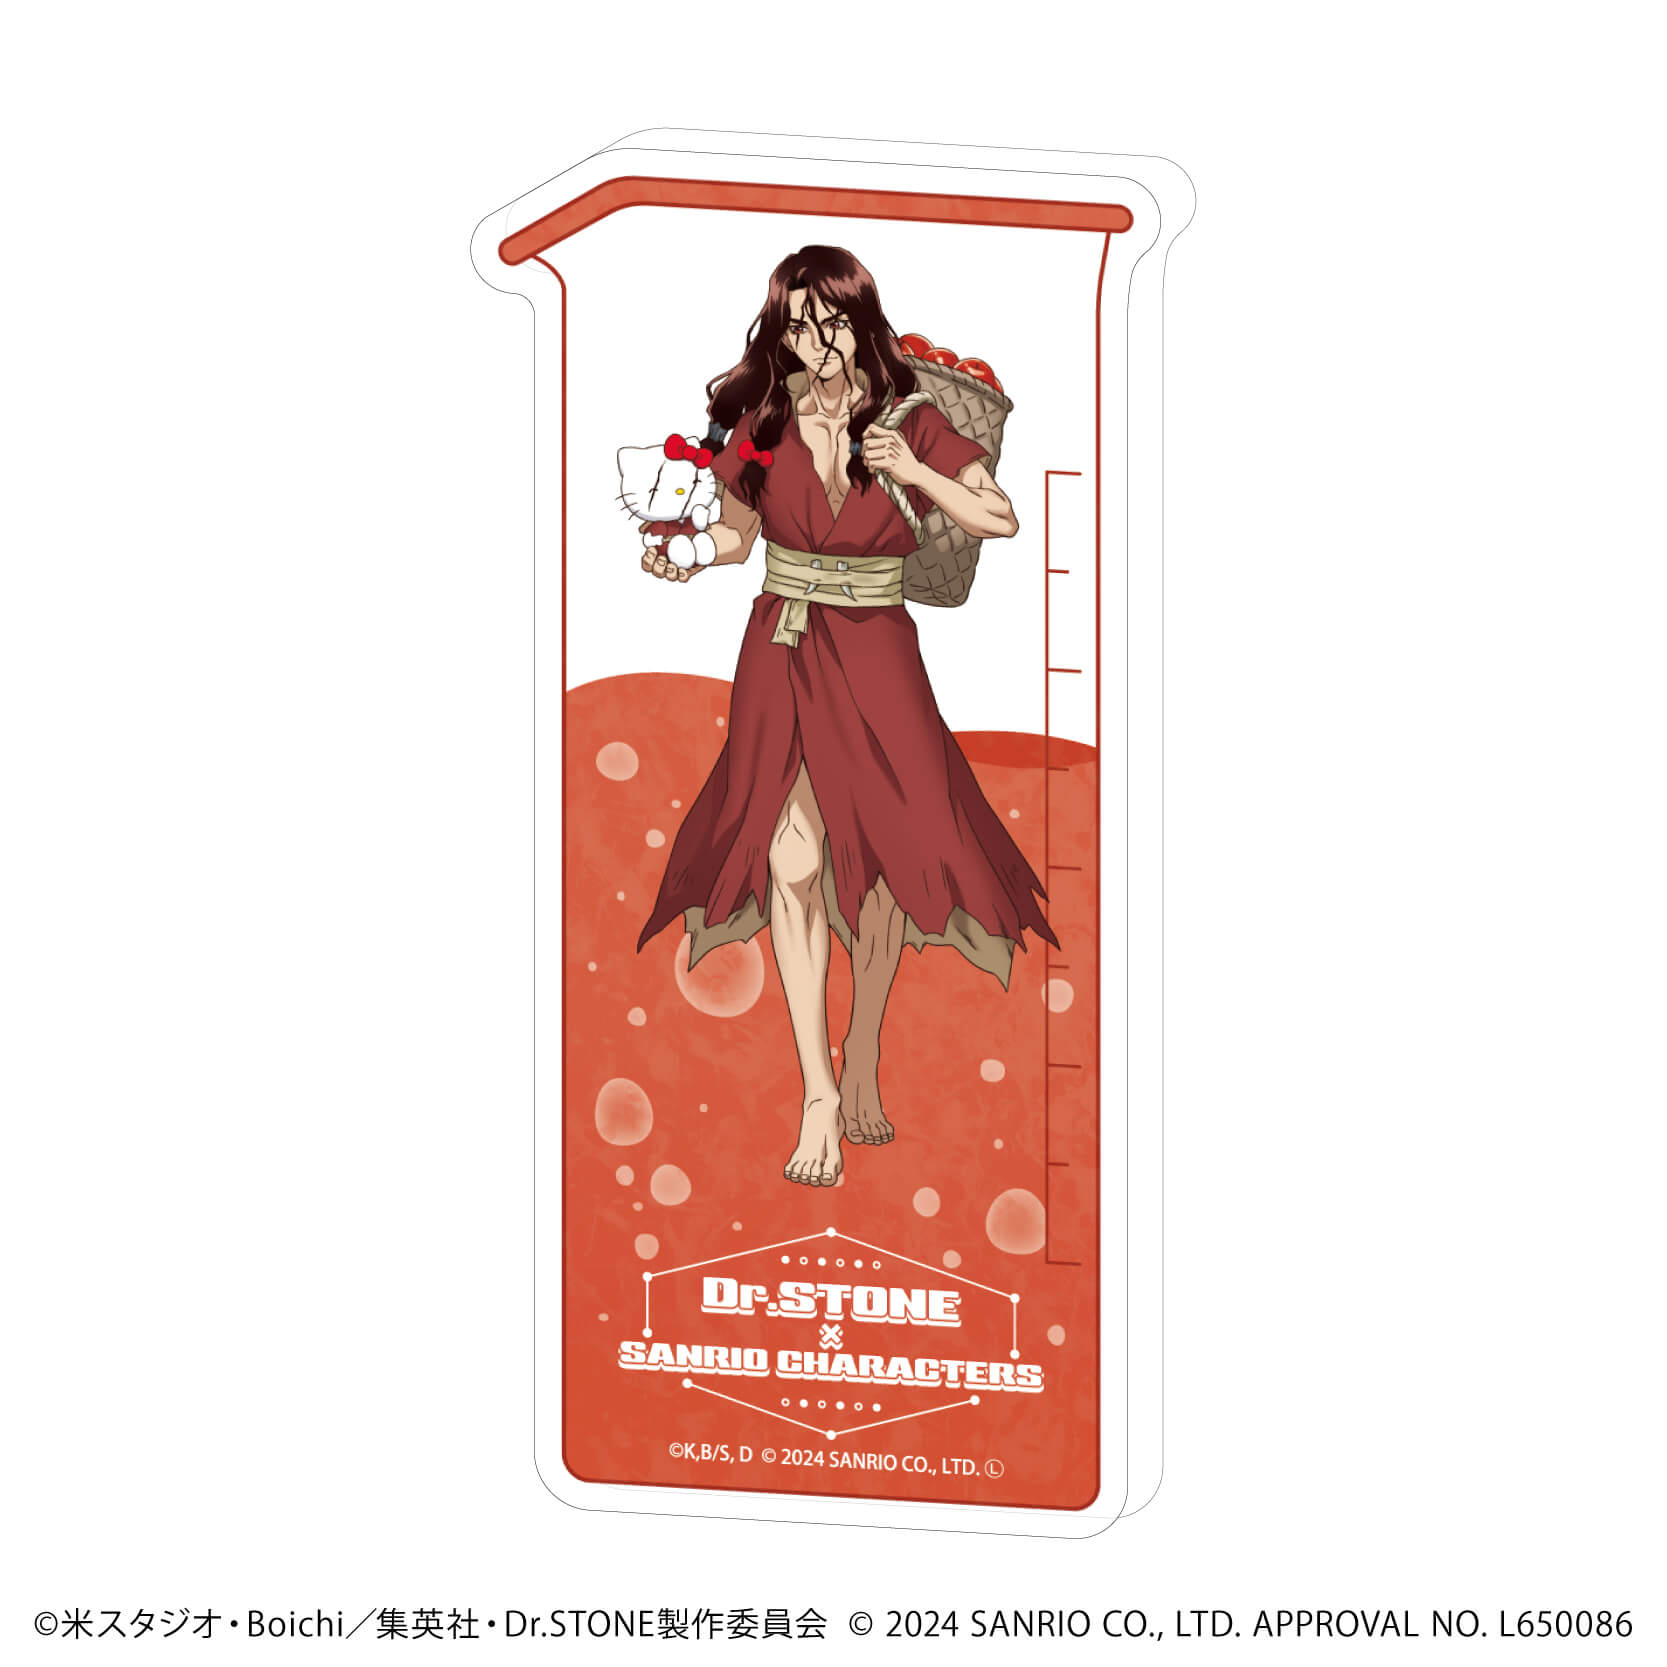 コレクションボトル「Dr.STONE×サンリオキャラクターズ」18/司×ハローキティ(コラボイラスト)